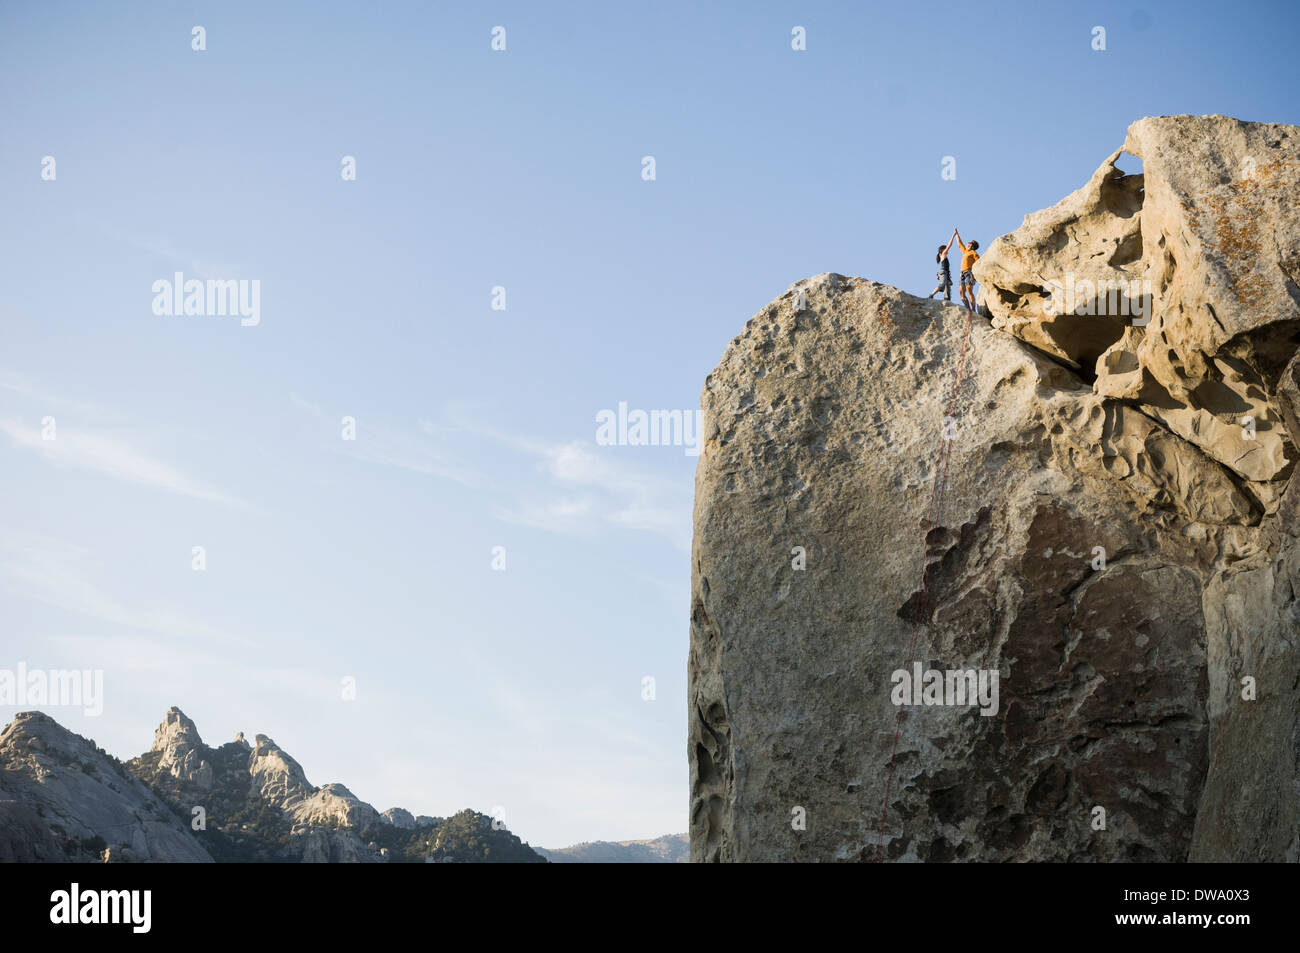 Il maschio, femmina e gli alpinisti sulla cima di 'Tribal' dei confini 5.10a - Flaming Rock, città di roccia, Idaho, Stati Uniti d'America Foto Stock